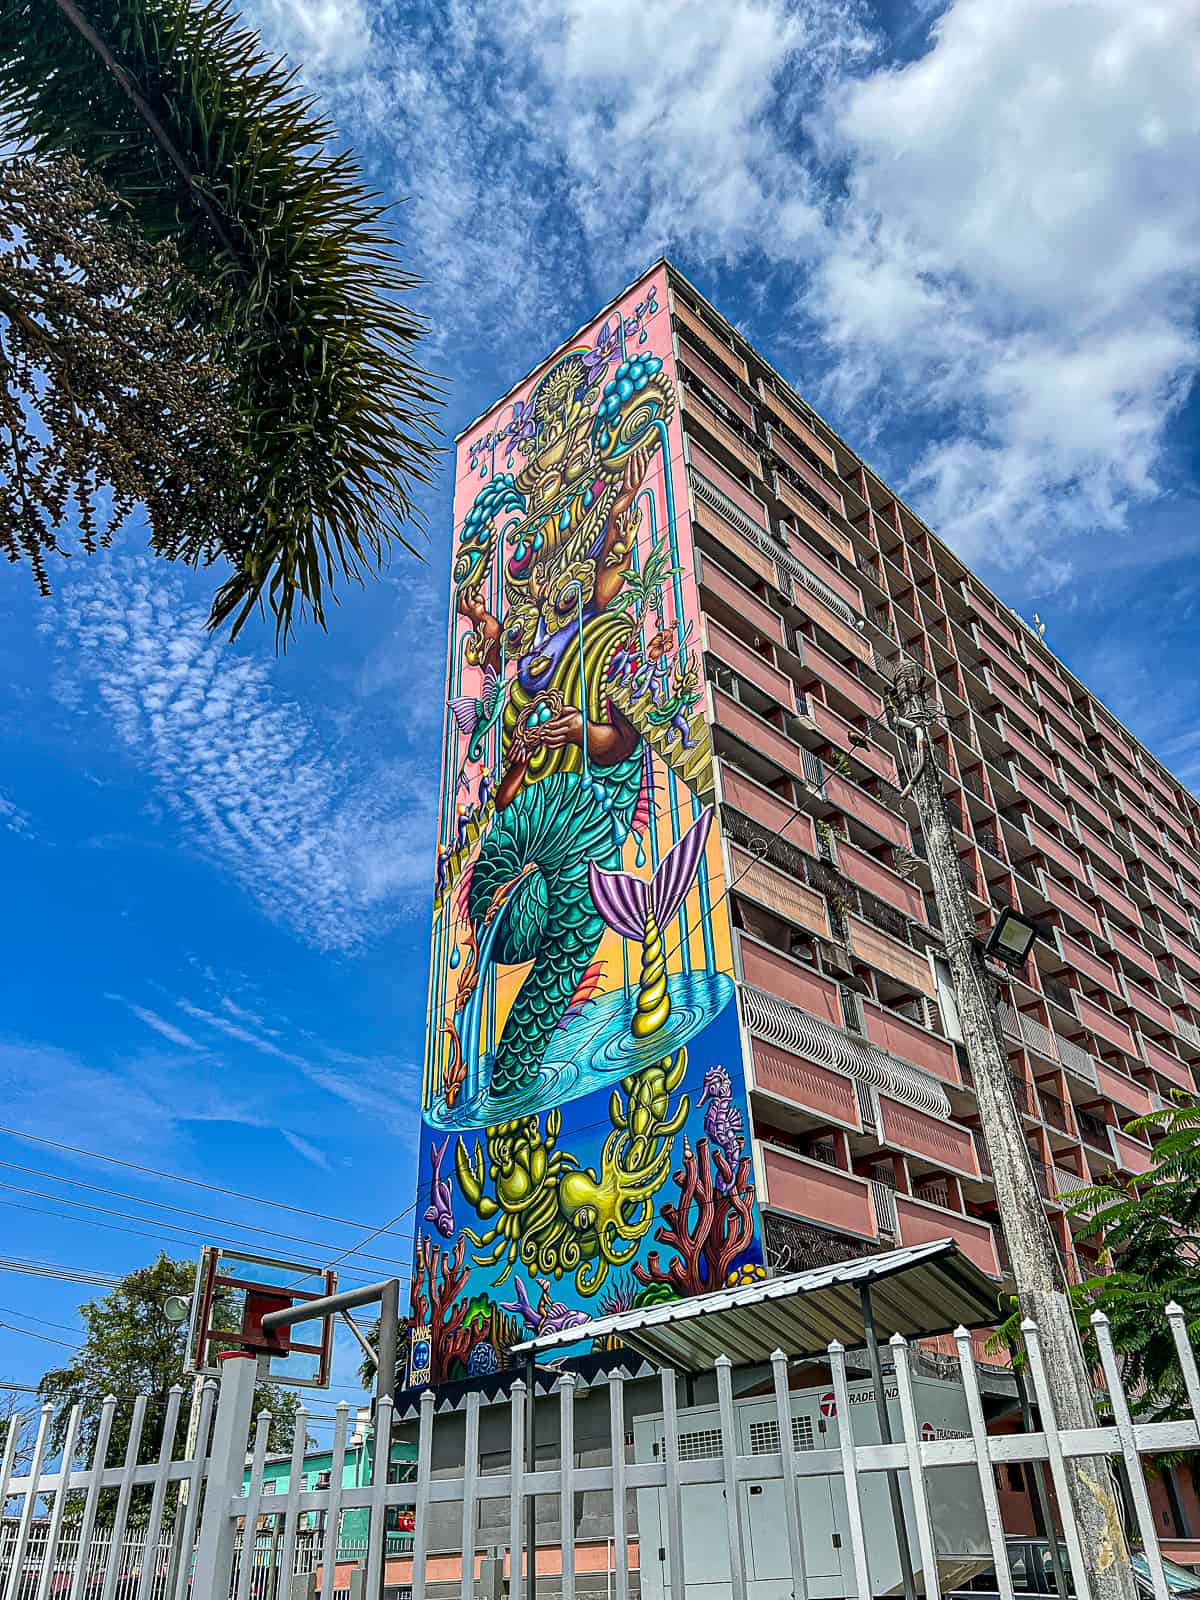 Large Santurce Apartment Building Art Mural